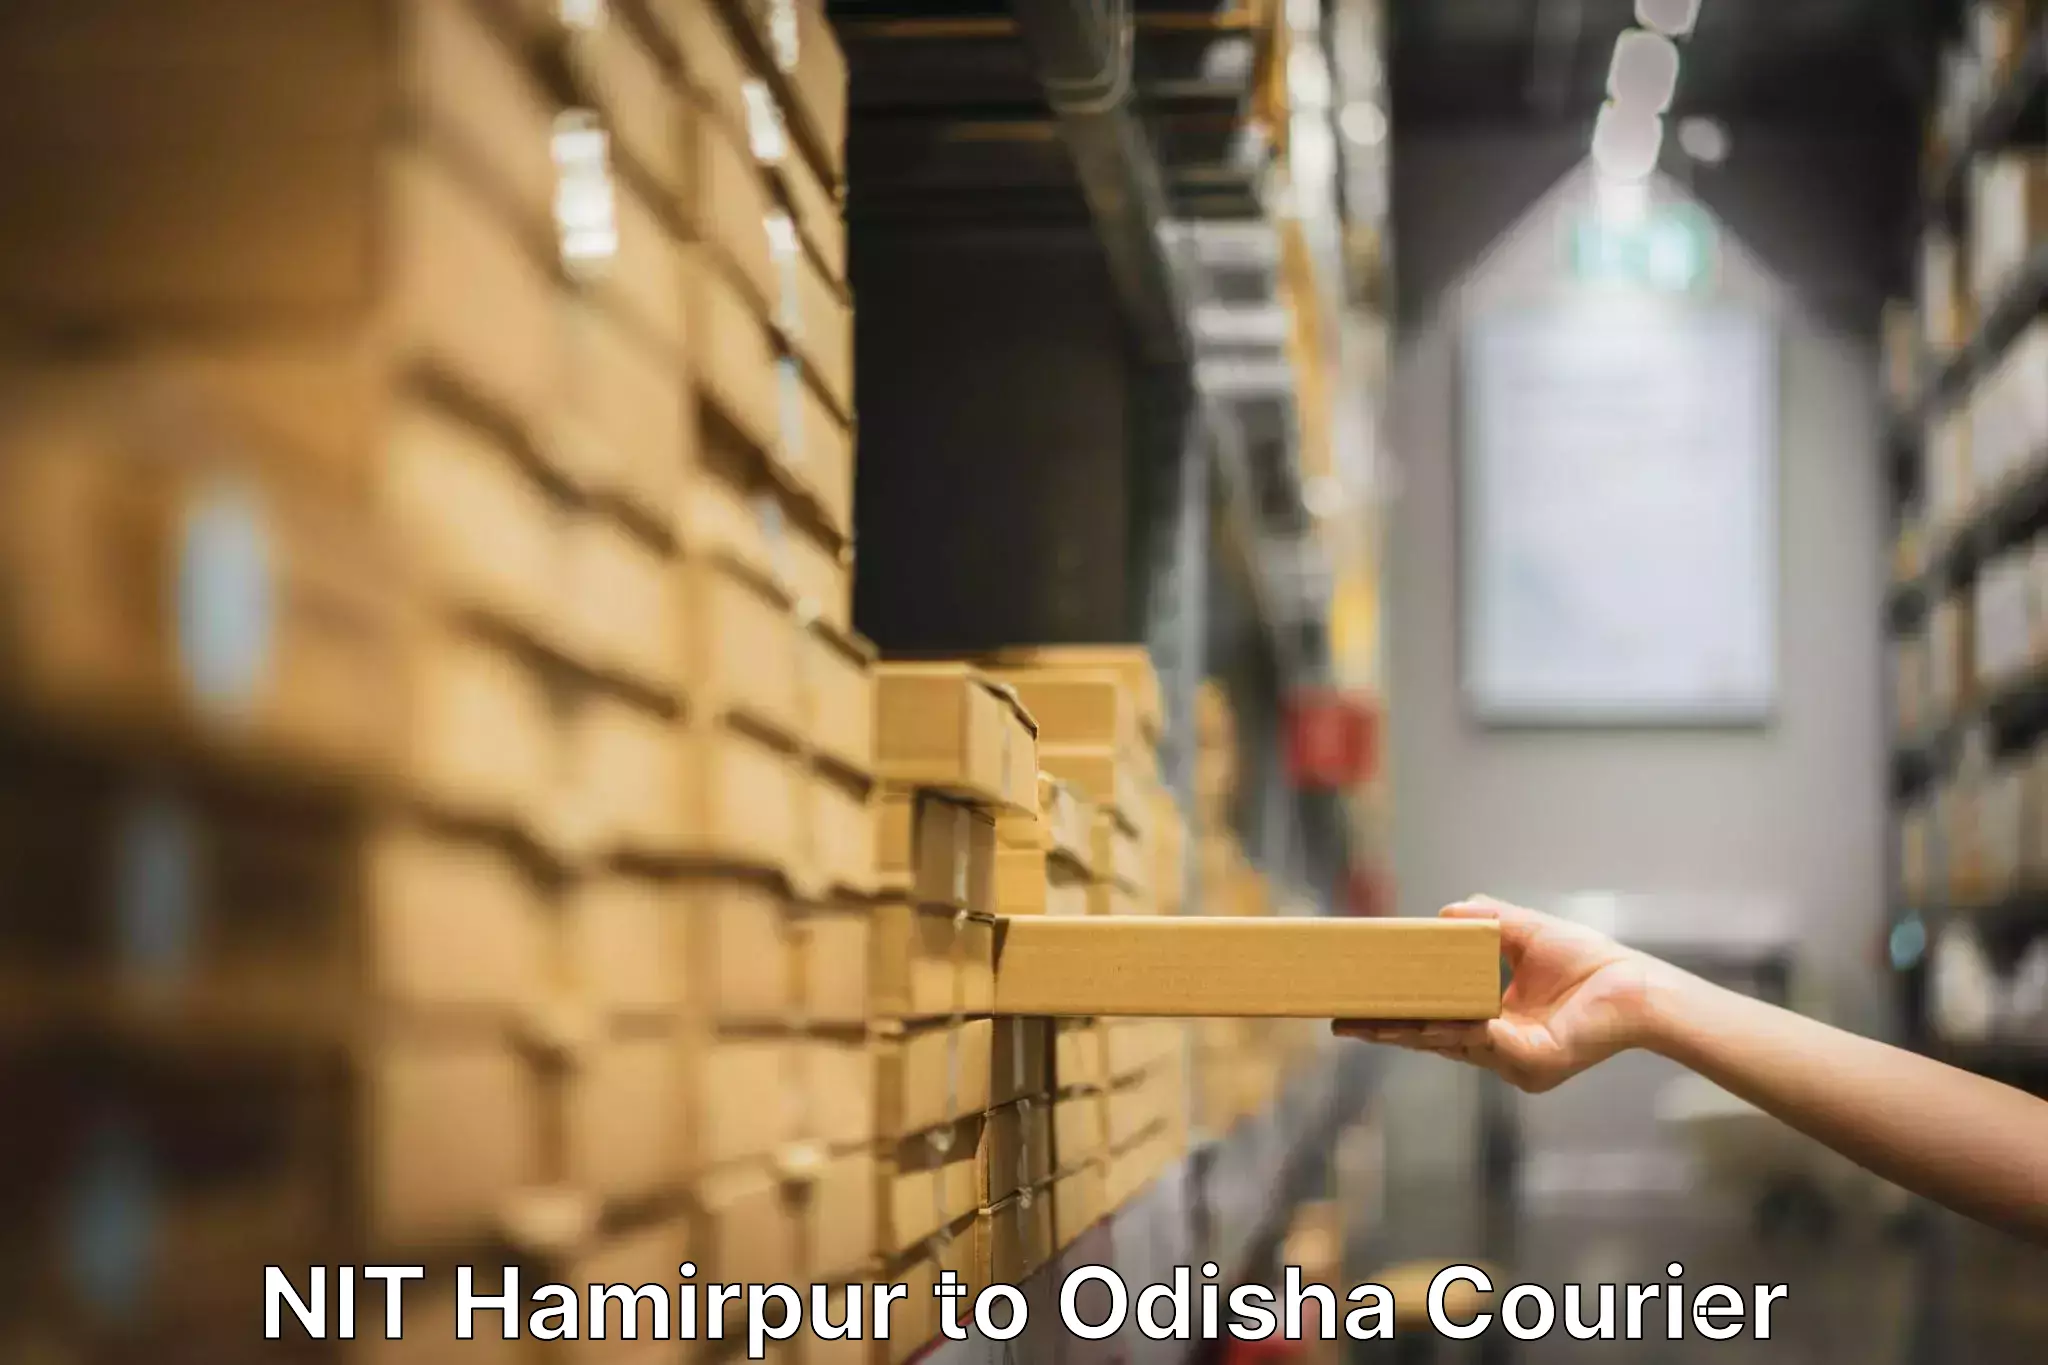 Efficient furniture movers NIT Hamirpur to Muniguda